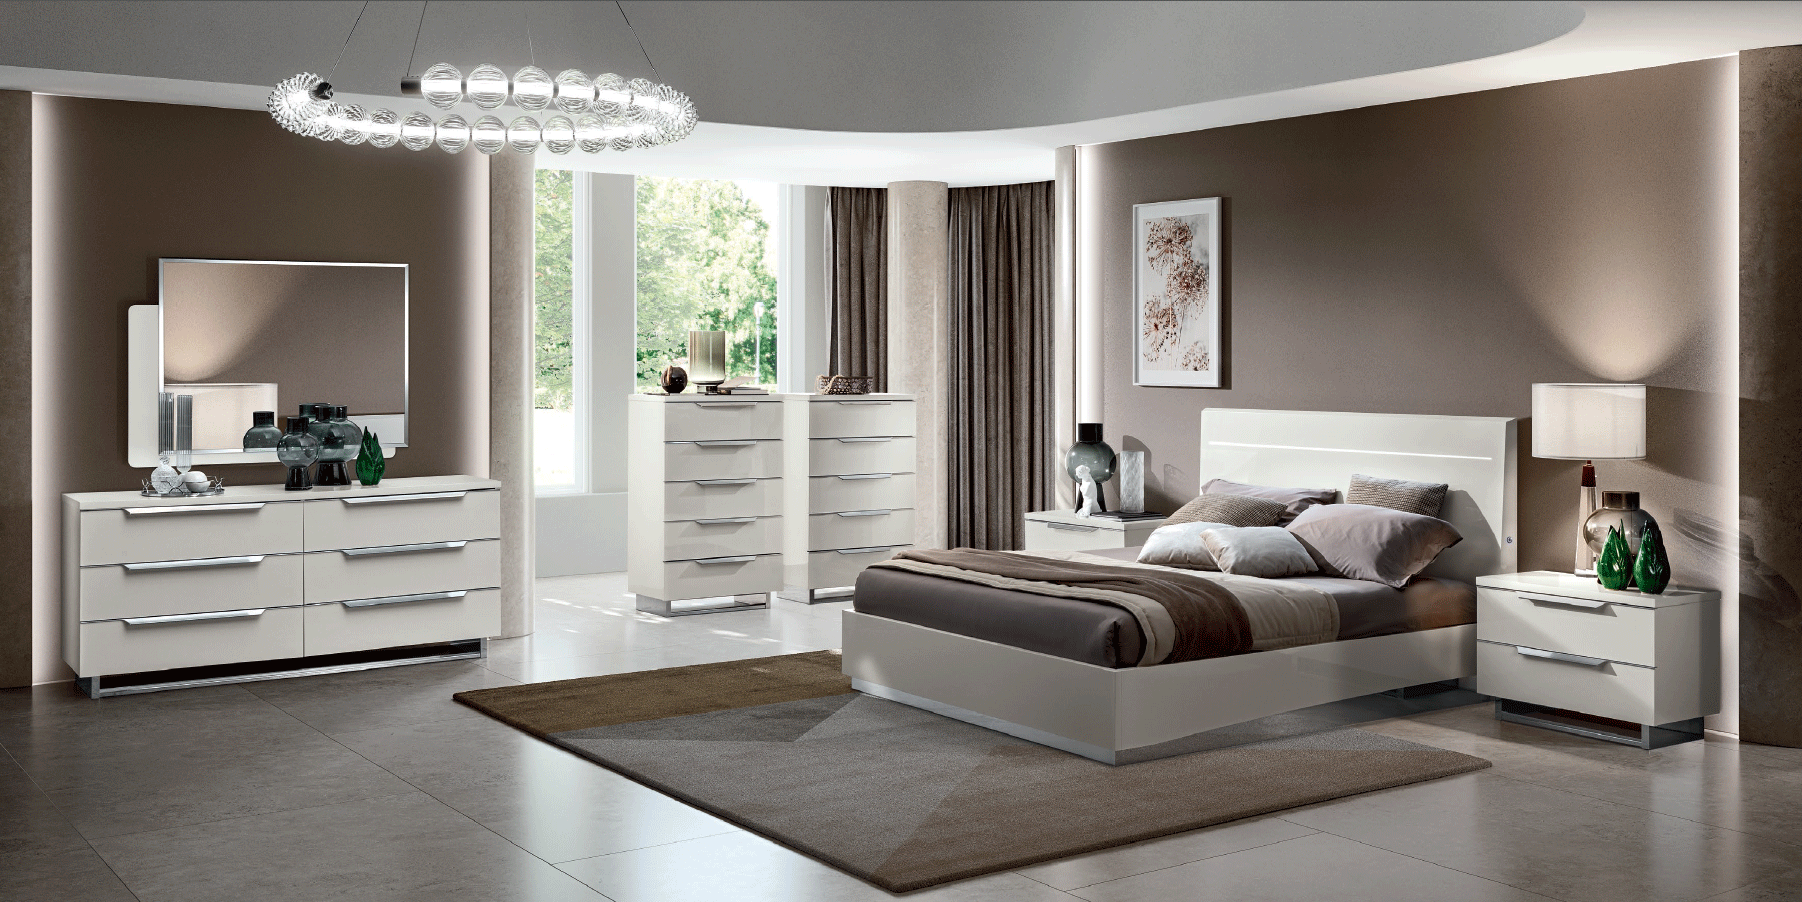 Bedroom Furniture Nightstands Kimera Bedroom